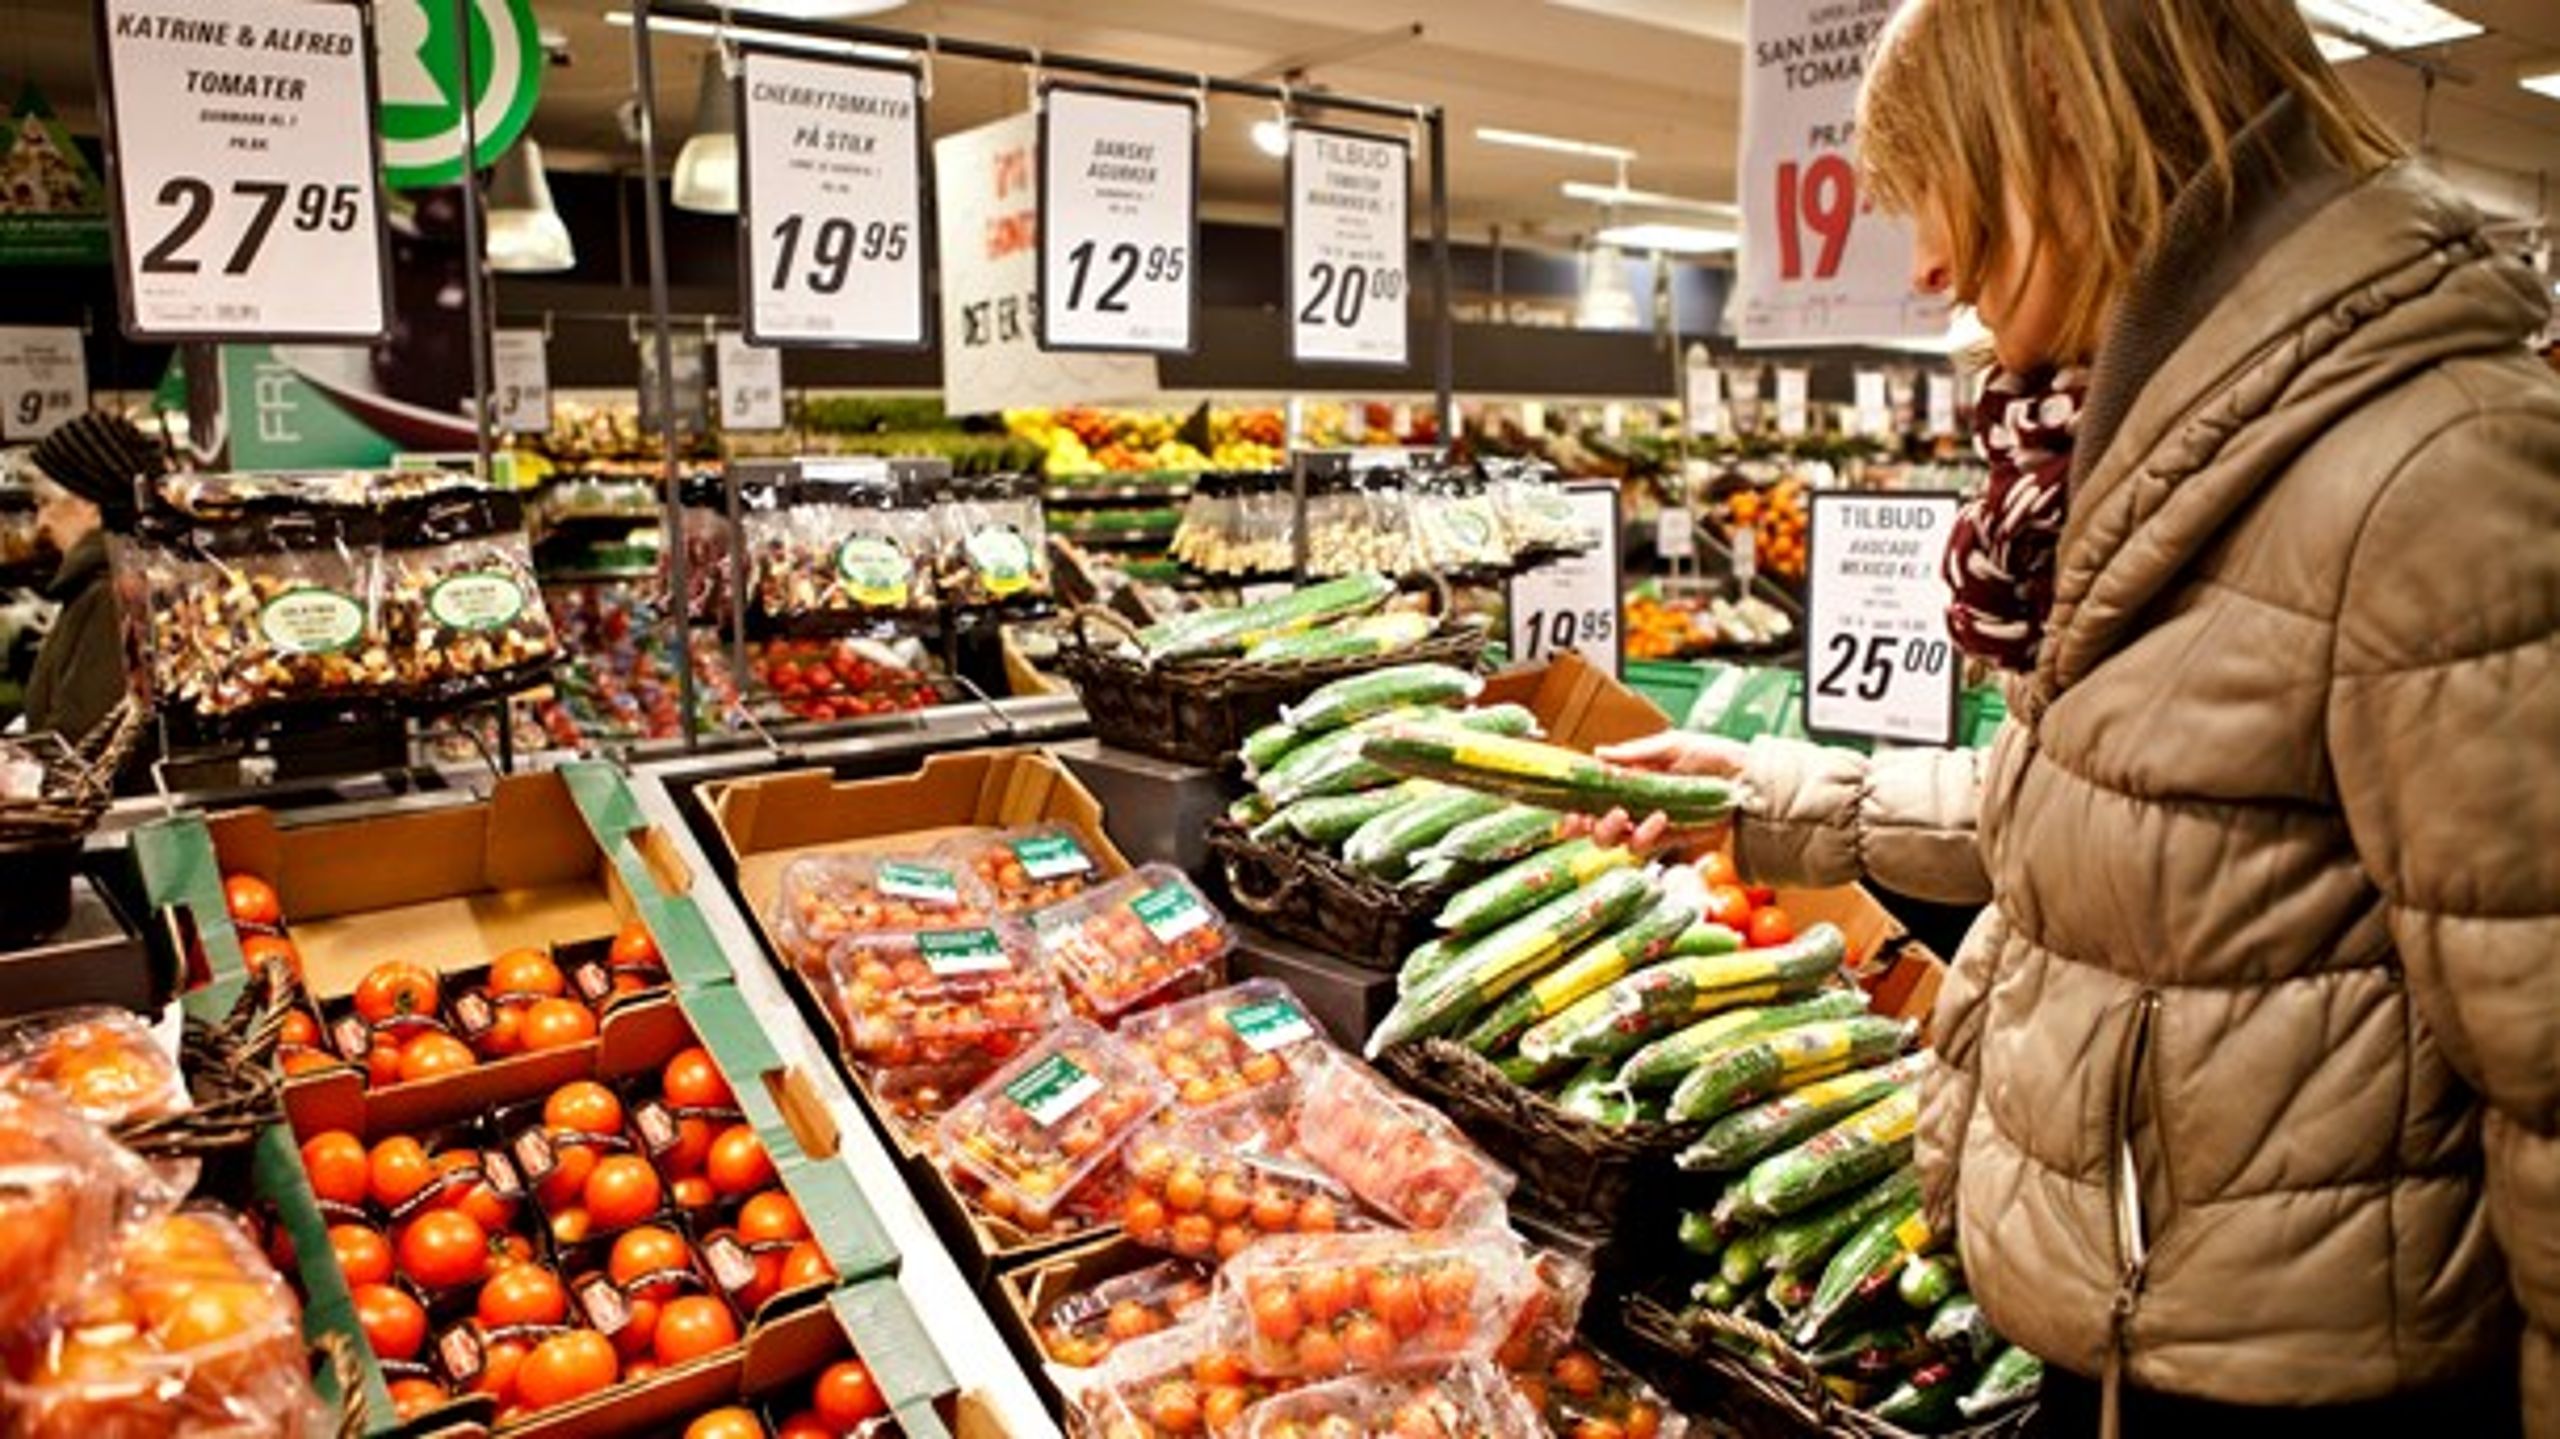 Der opstår hurtigt mange dilemmaer, når man som forbruger skal afveje økologi, dyrevelfærd og klima i supermarkedet, skriver Jeppe Rønnebæk Kongsbak.